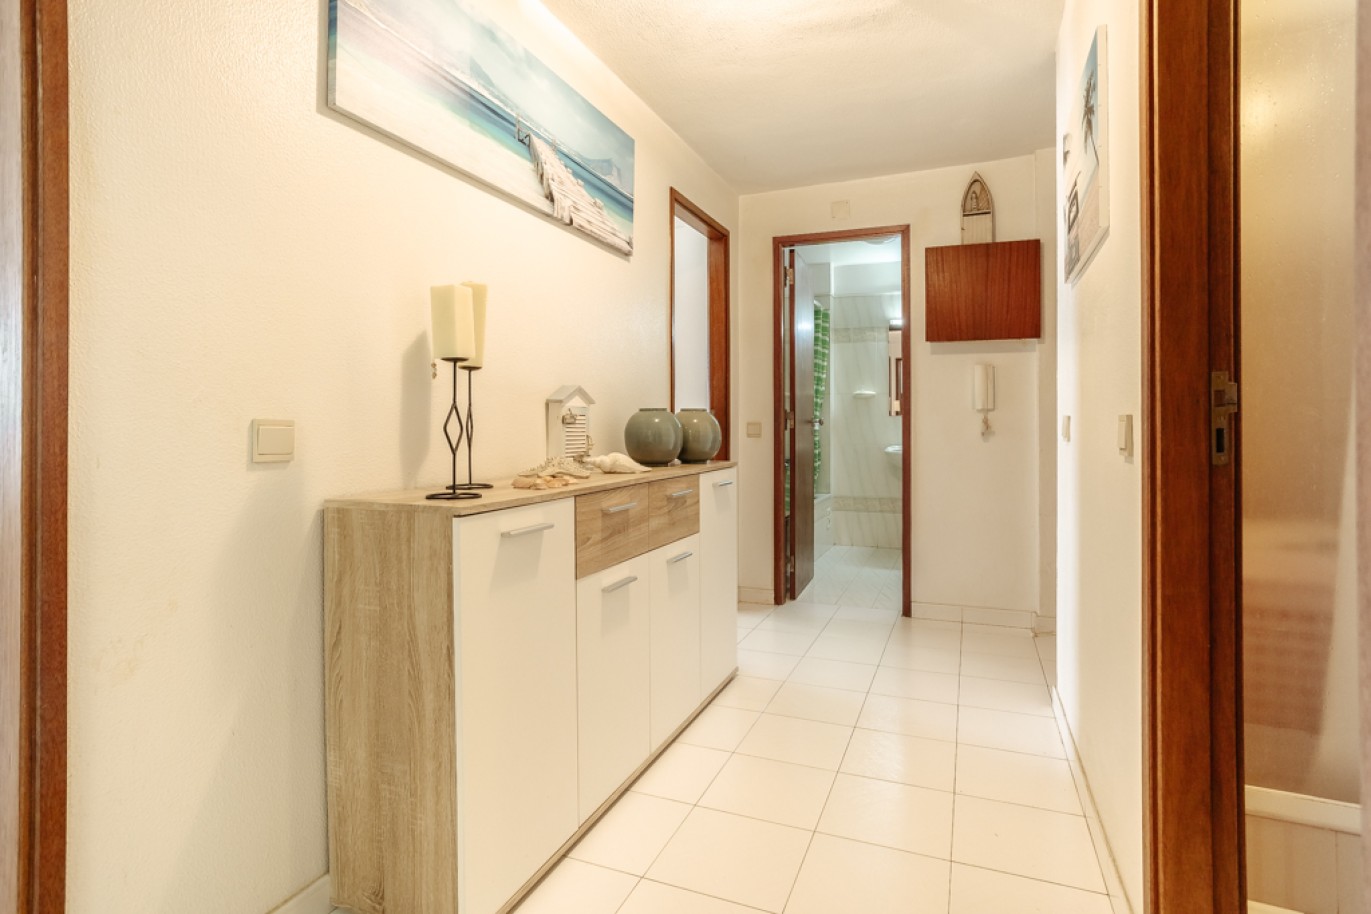 Apartamento com 1+1 quartos, com vista mar, para venda em Porches, Algarve_257035